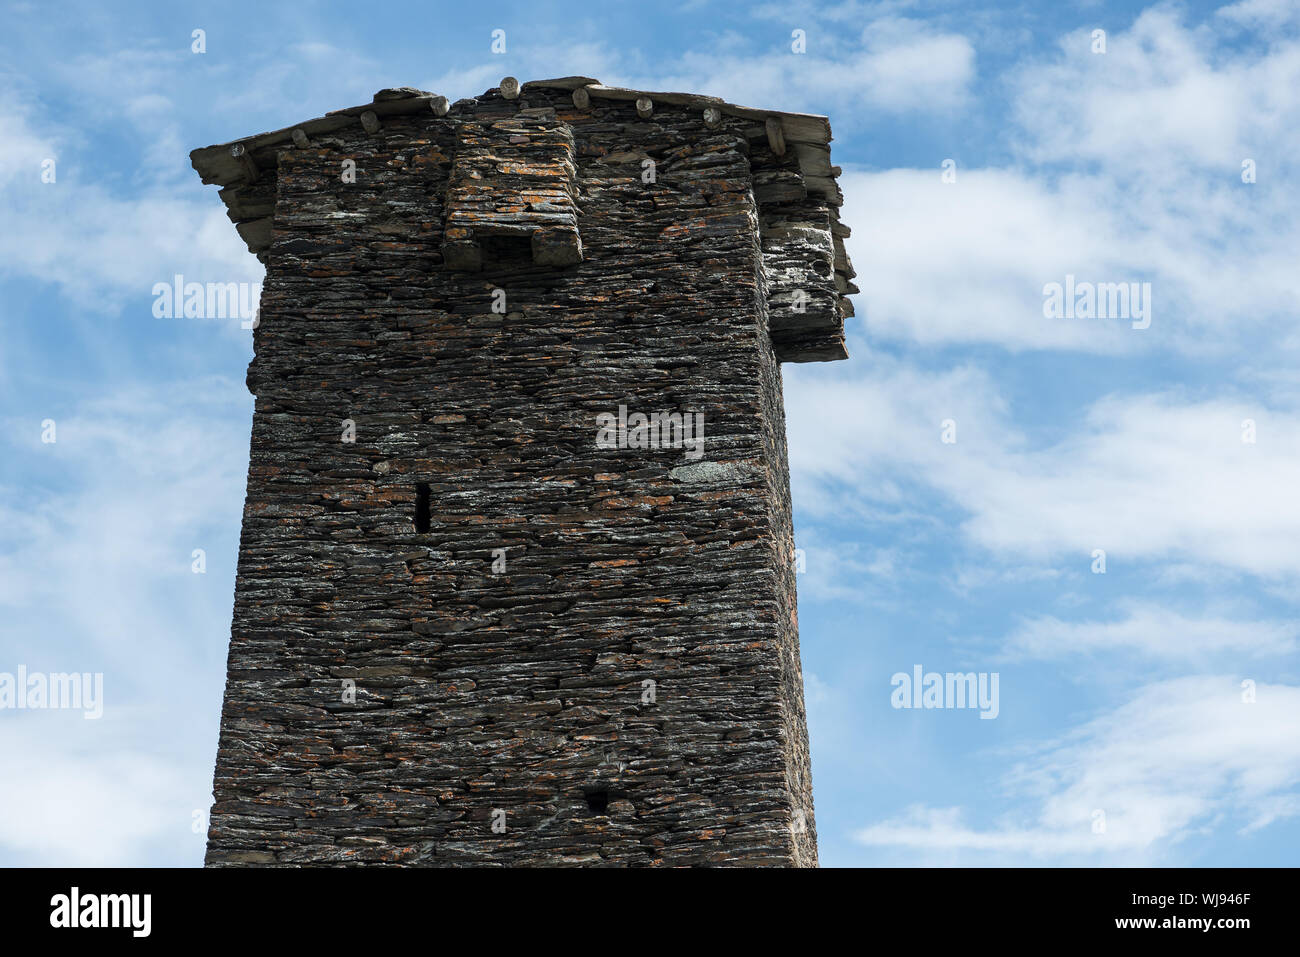 La tour de pierre dans la communauté d'Ushguli. Zemo Svaneti, Géorgie Banque D'Images